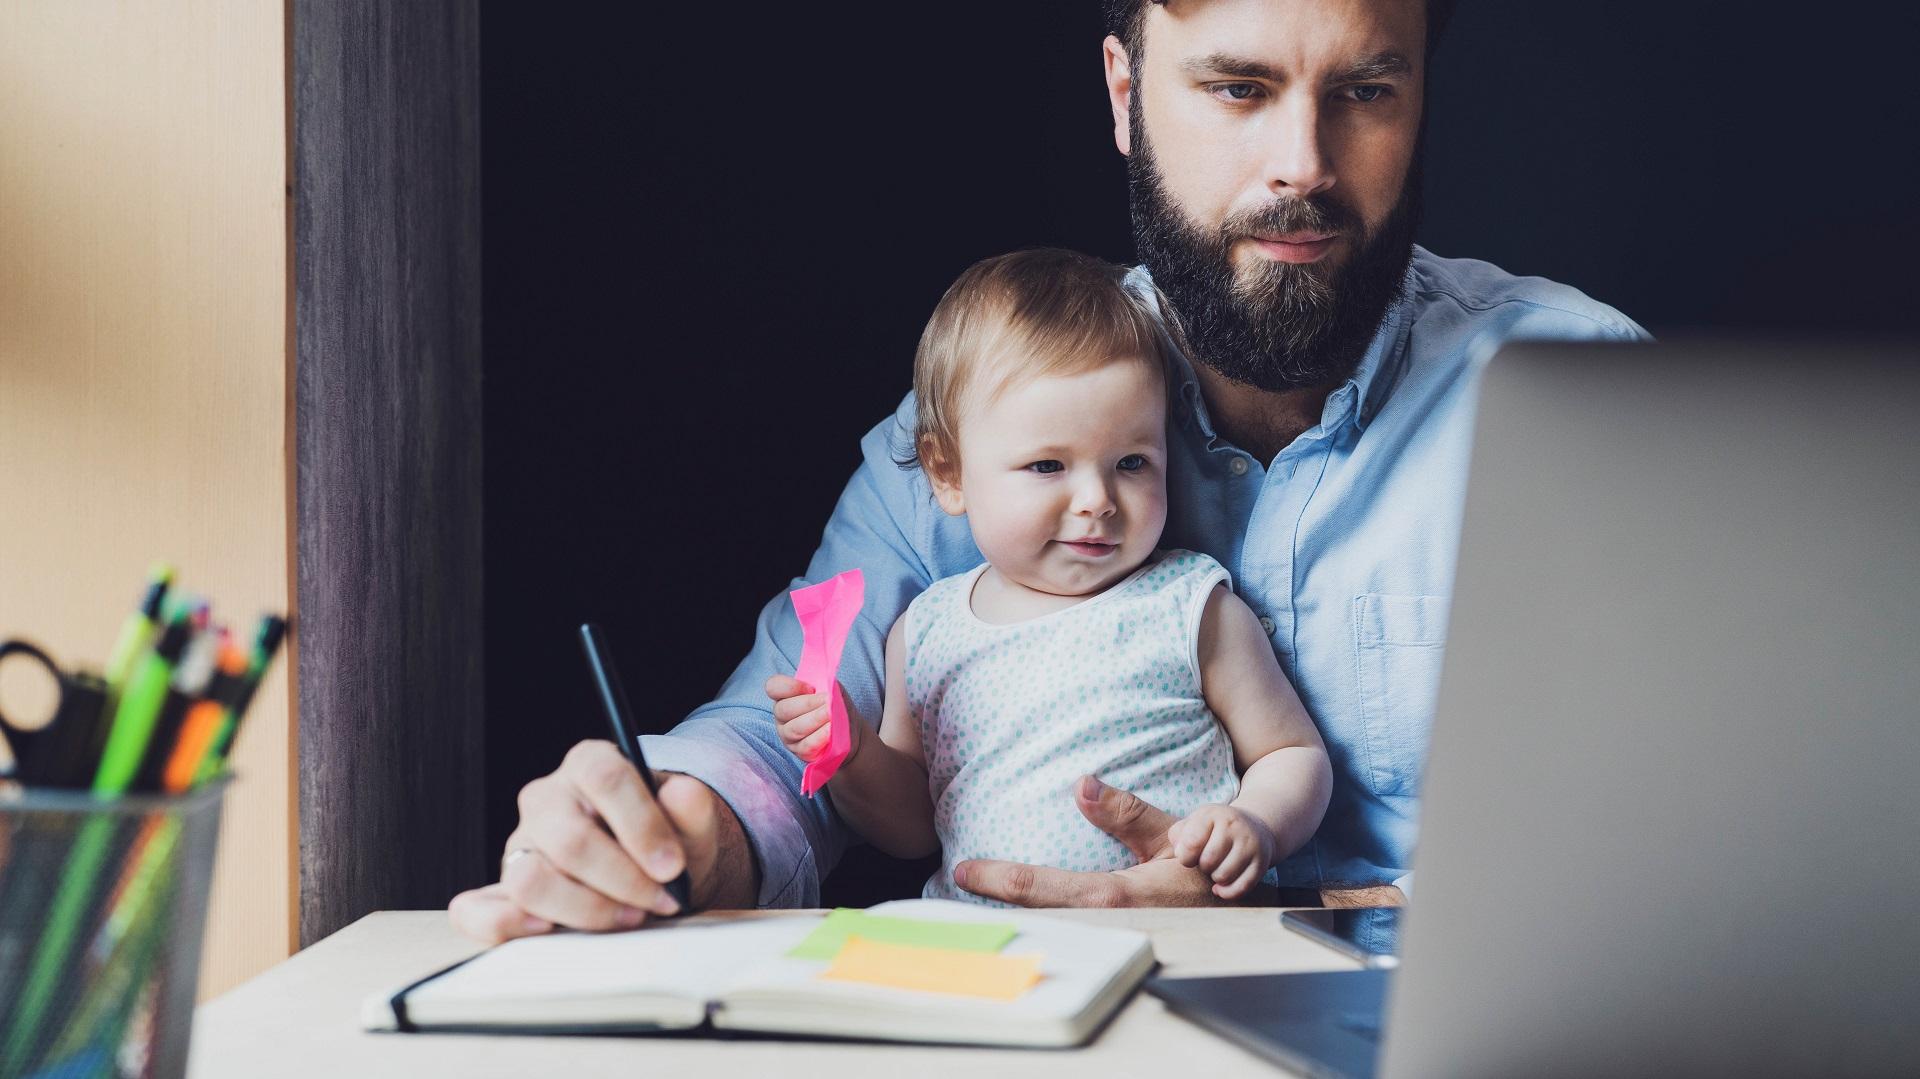 Jokaisen työntekijän perhetilanne on erilainen. Koska olet viimeksi kysynyt kollegalta, mitä hänelle kuuluu? (Kuva: Shutterstock)